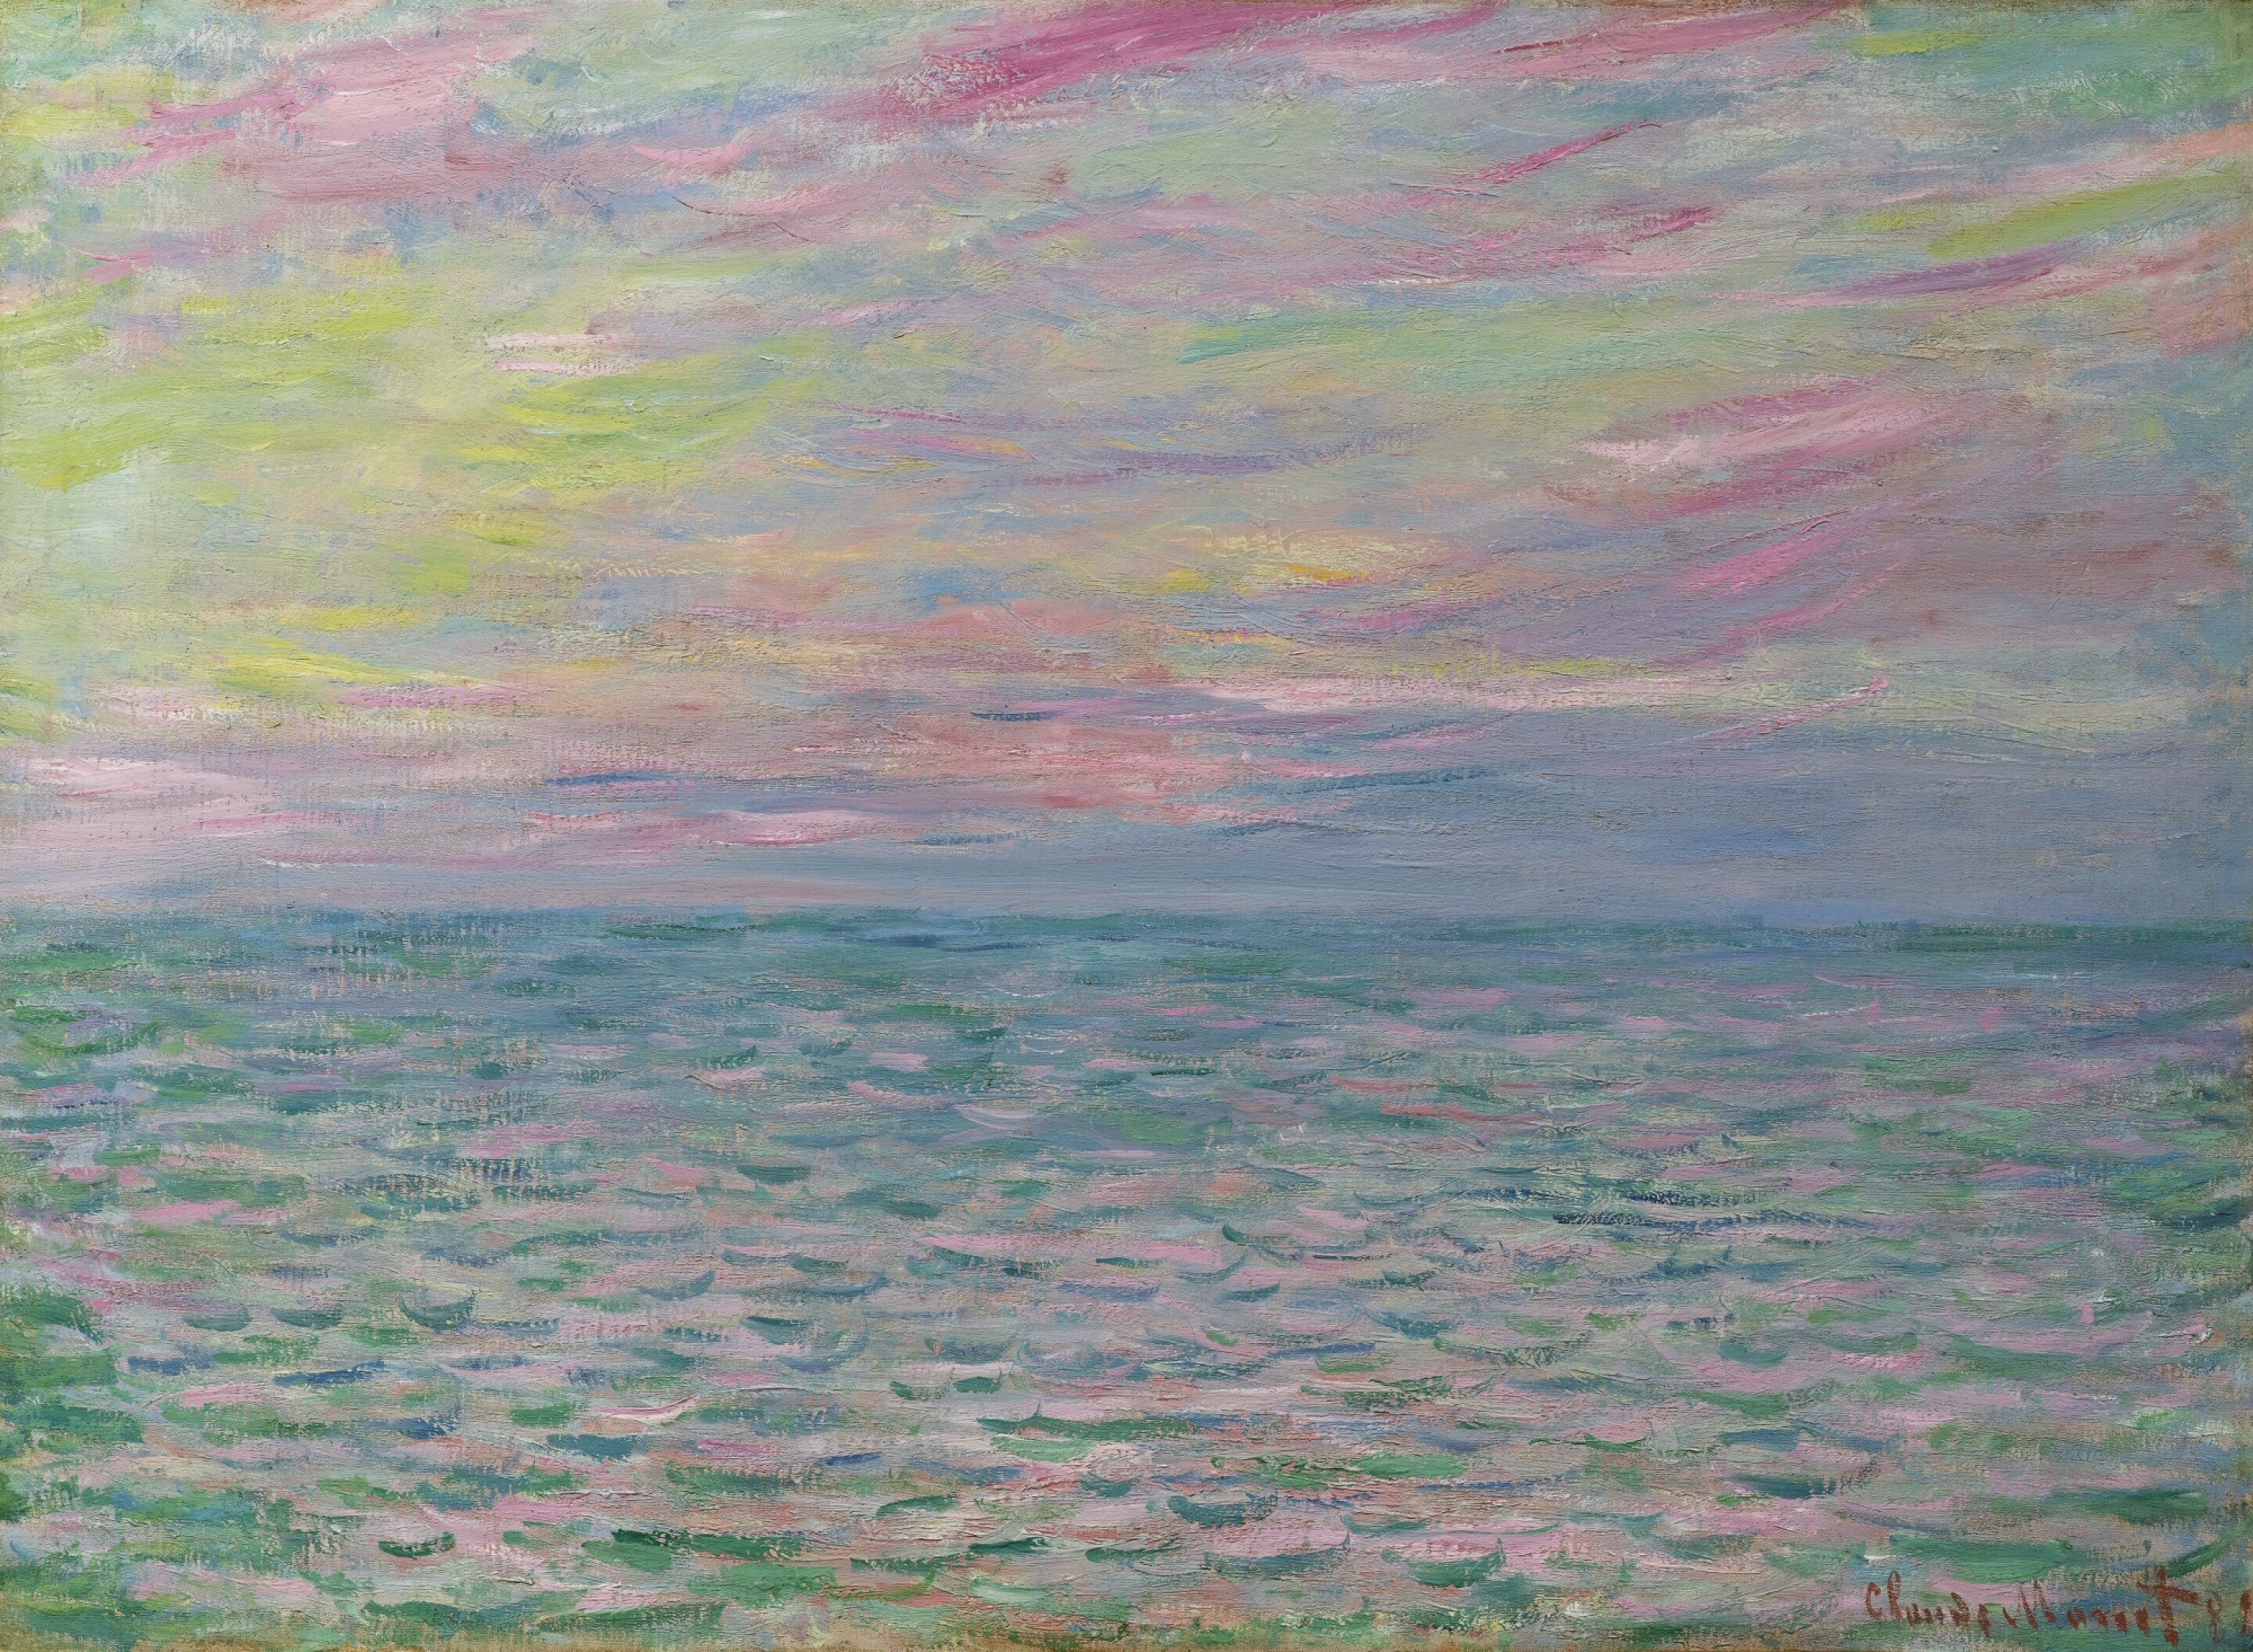 Pourville'de, Açık Deniz'deki Gün Batımı (orig. "Sunset in Pourville, Open Sea") by Claude Monet - 1882 - 54 x 73.5 cm özel koleksiyon